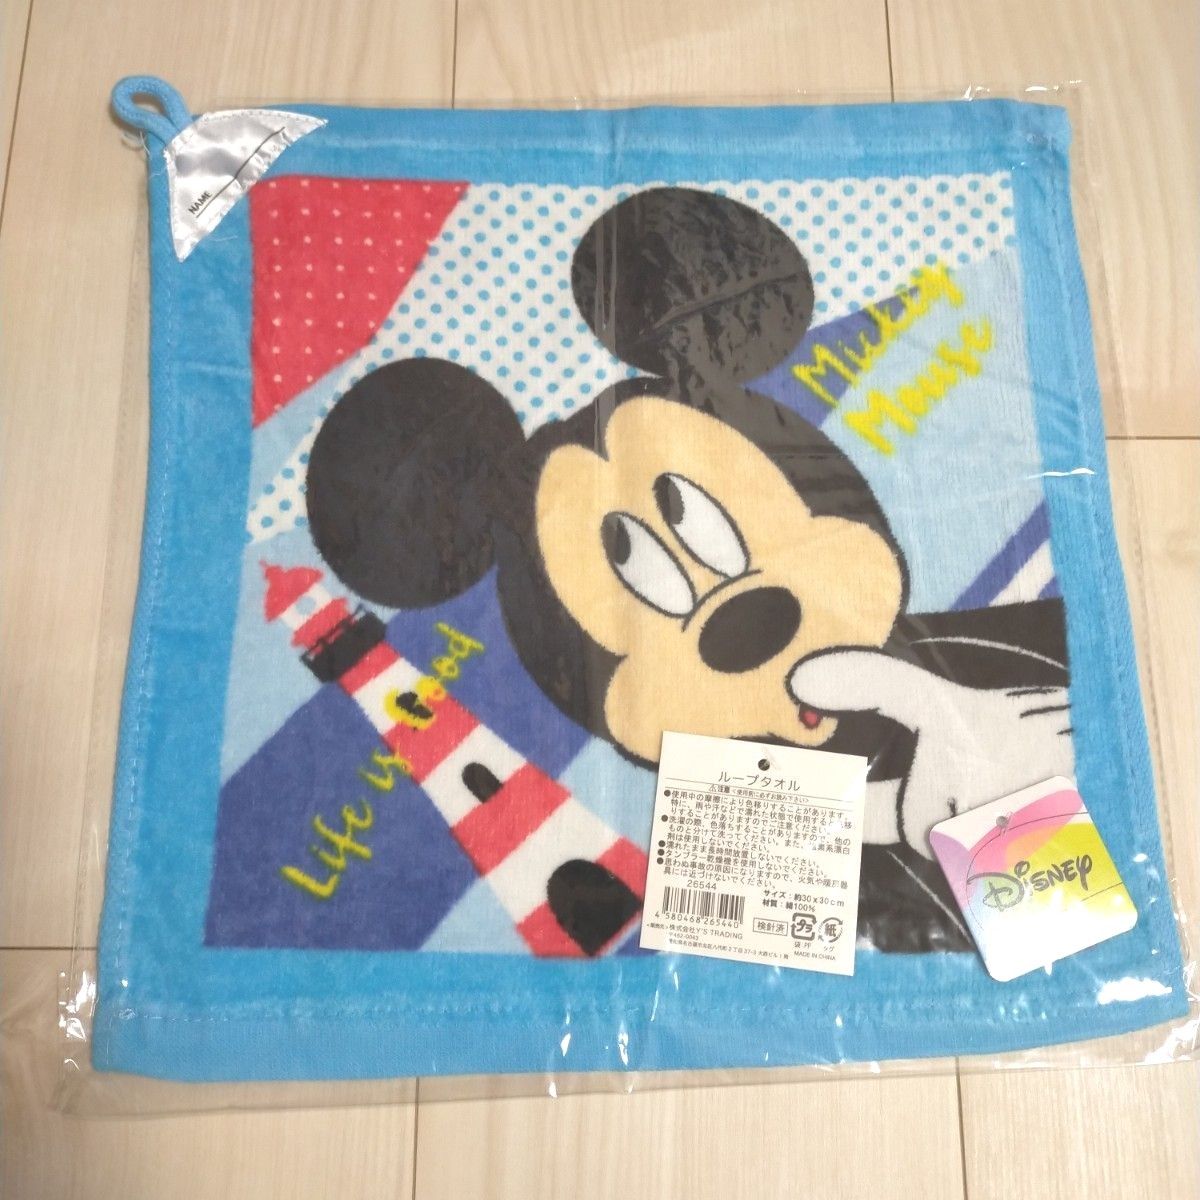 【新品】Disney ミッキーマウス プーさんループ付きタオル 3枚組